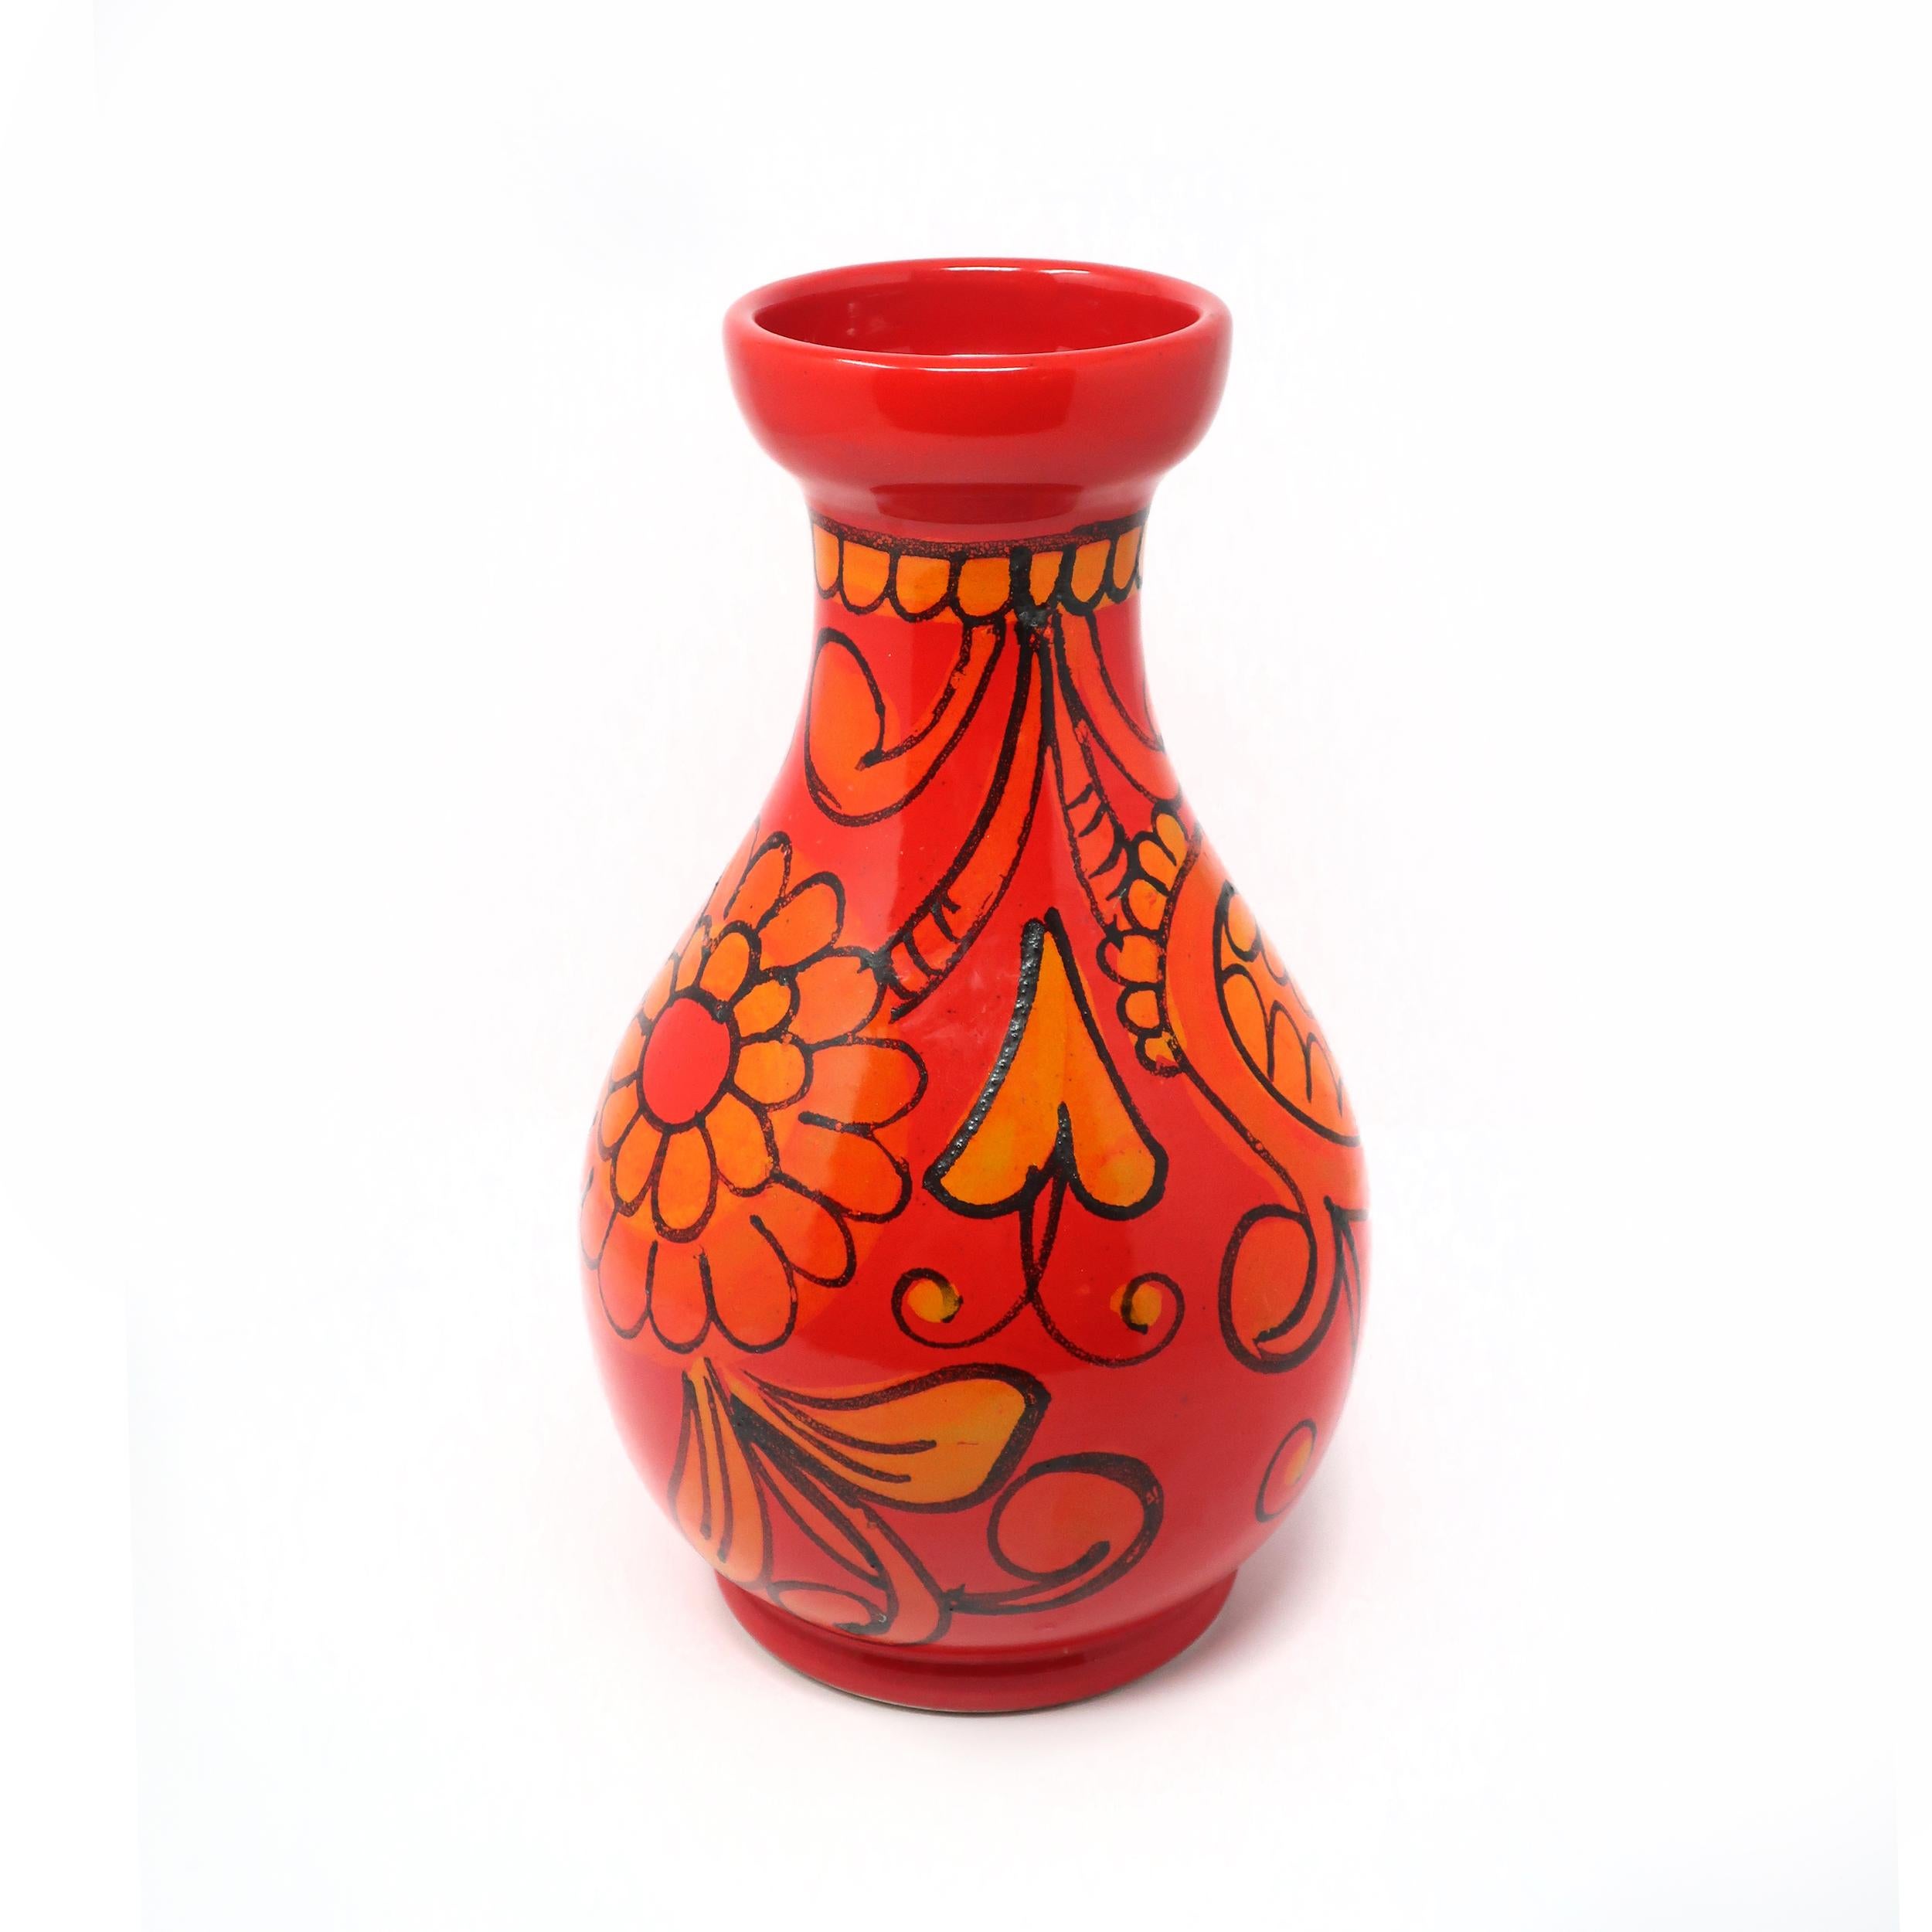 Un vase Bitossi moderne du milieu du siècle, à glaçure rouge et orange, avec des accents en relief de plantes et de fleurs. 

La glaçure est brillante et en bon état vintage avec une usure correspondant à l'âge et à l'utilisation. Marqué 